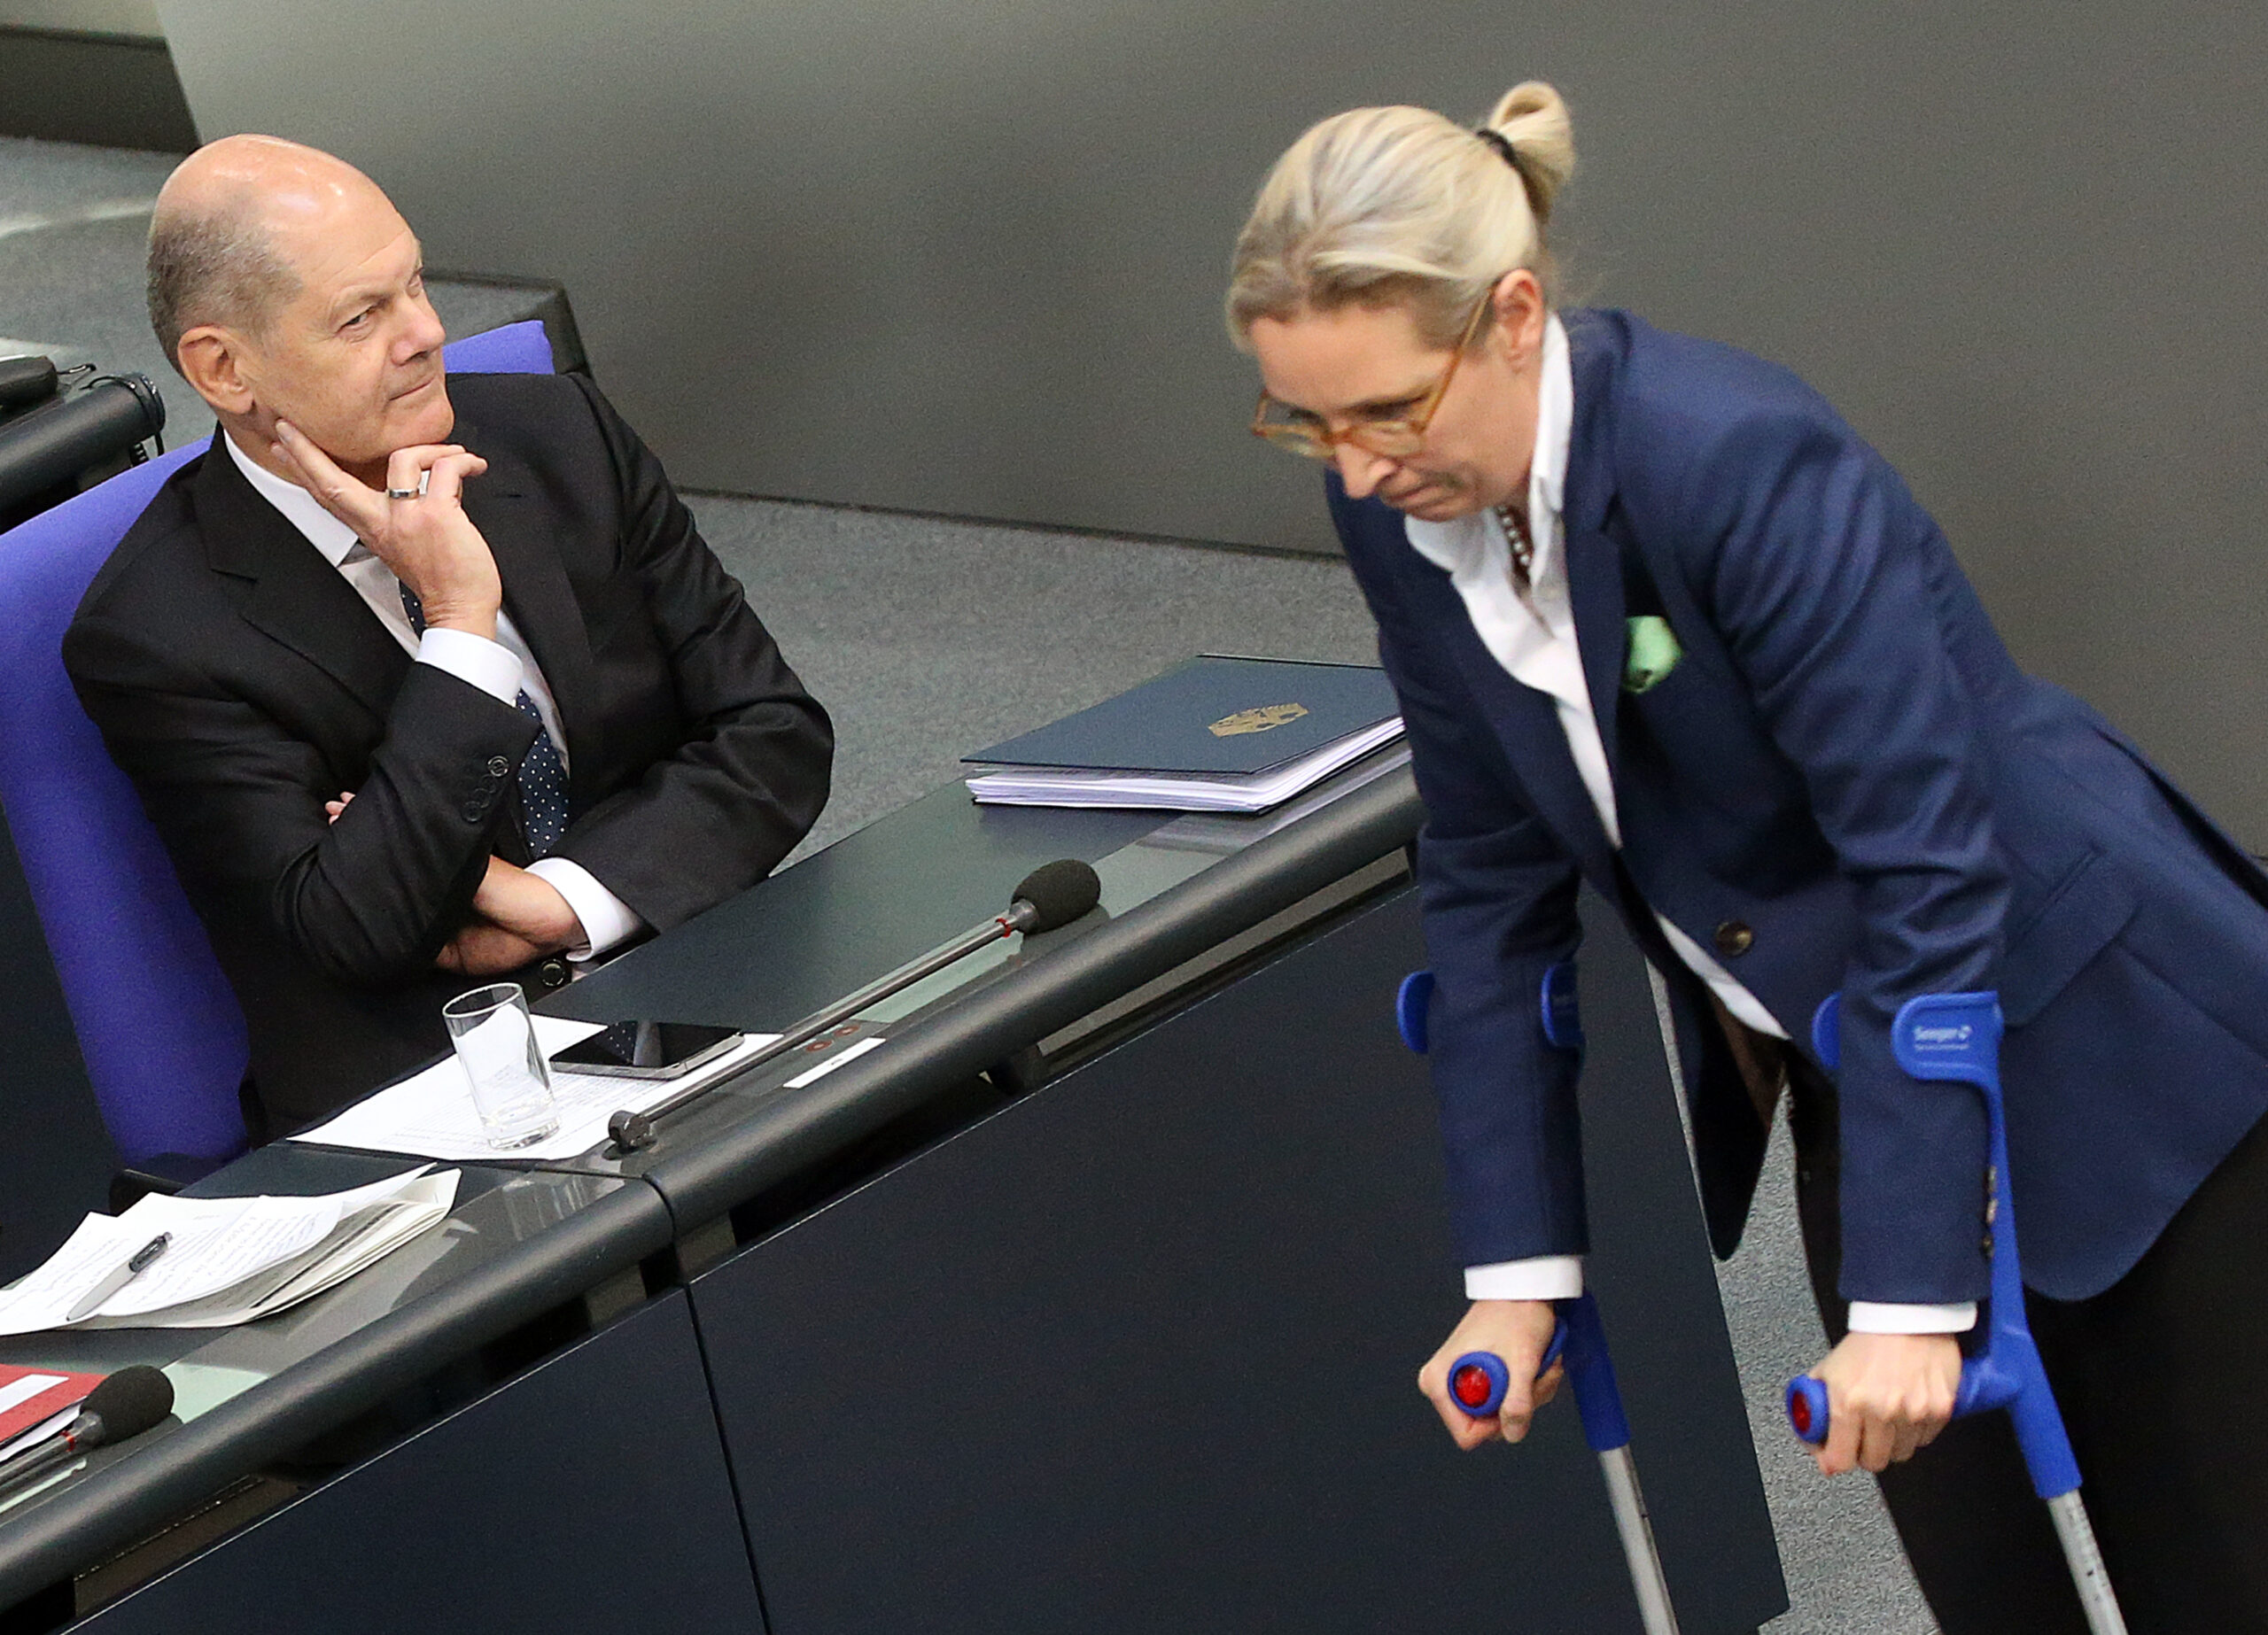 Nach knapp einem Jahr hat die SPD von Kanzler Scholz die AfD von Alice Weidel in der Forsa-Umfrage überholt. (Symbolbild)